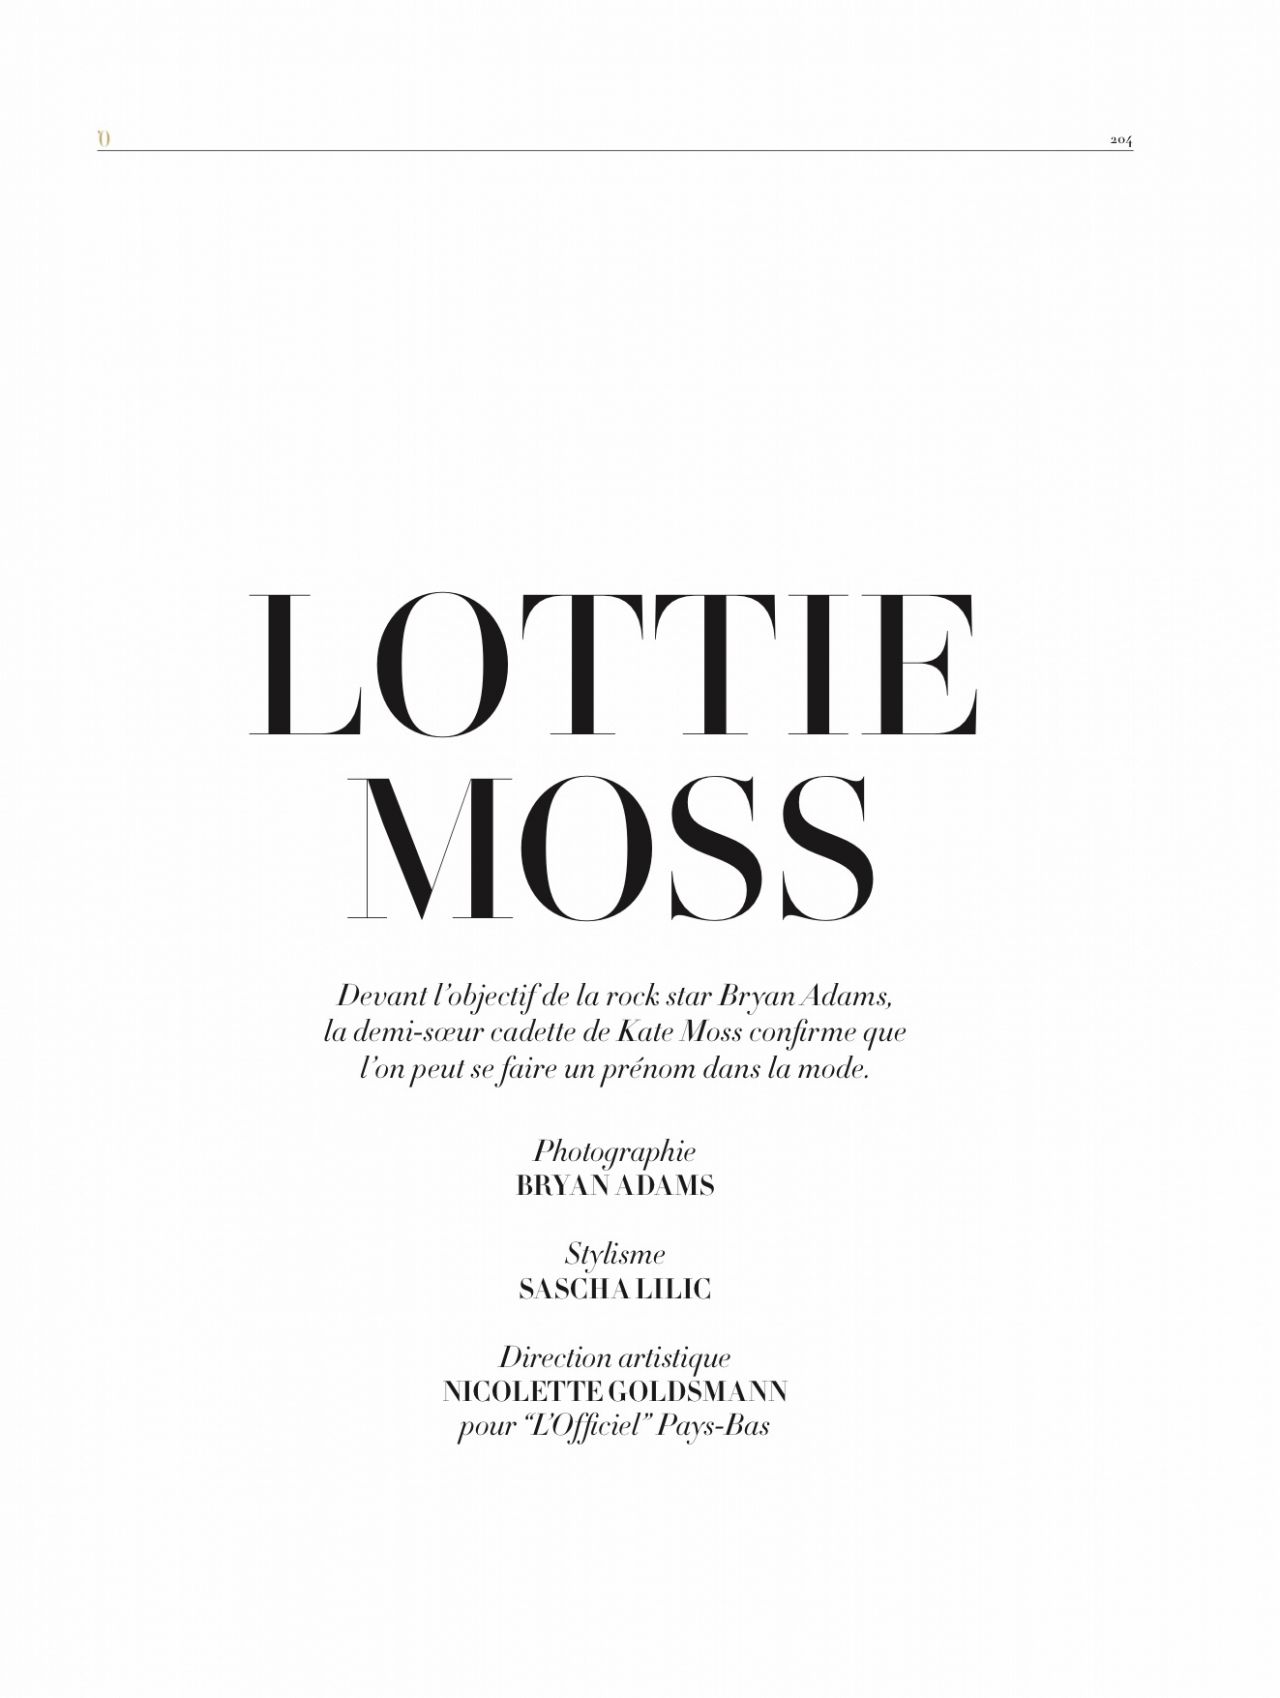 Lottie Moss - LOfficiel Magazine Paris March 2016 Issue 